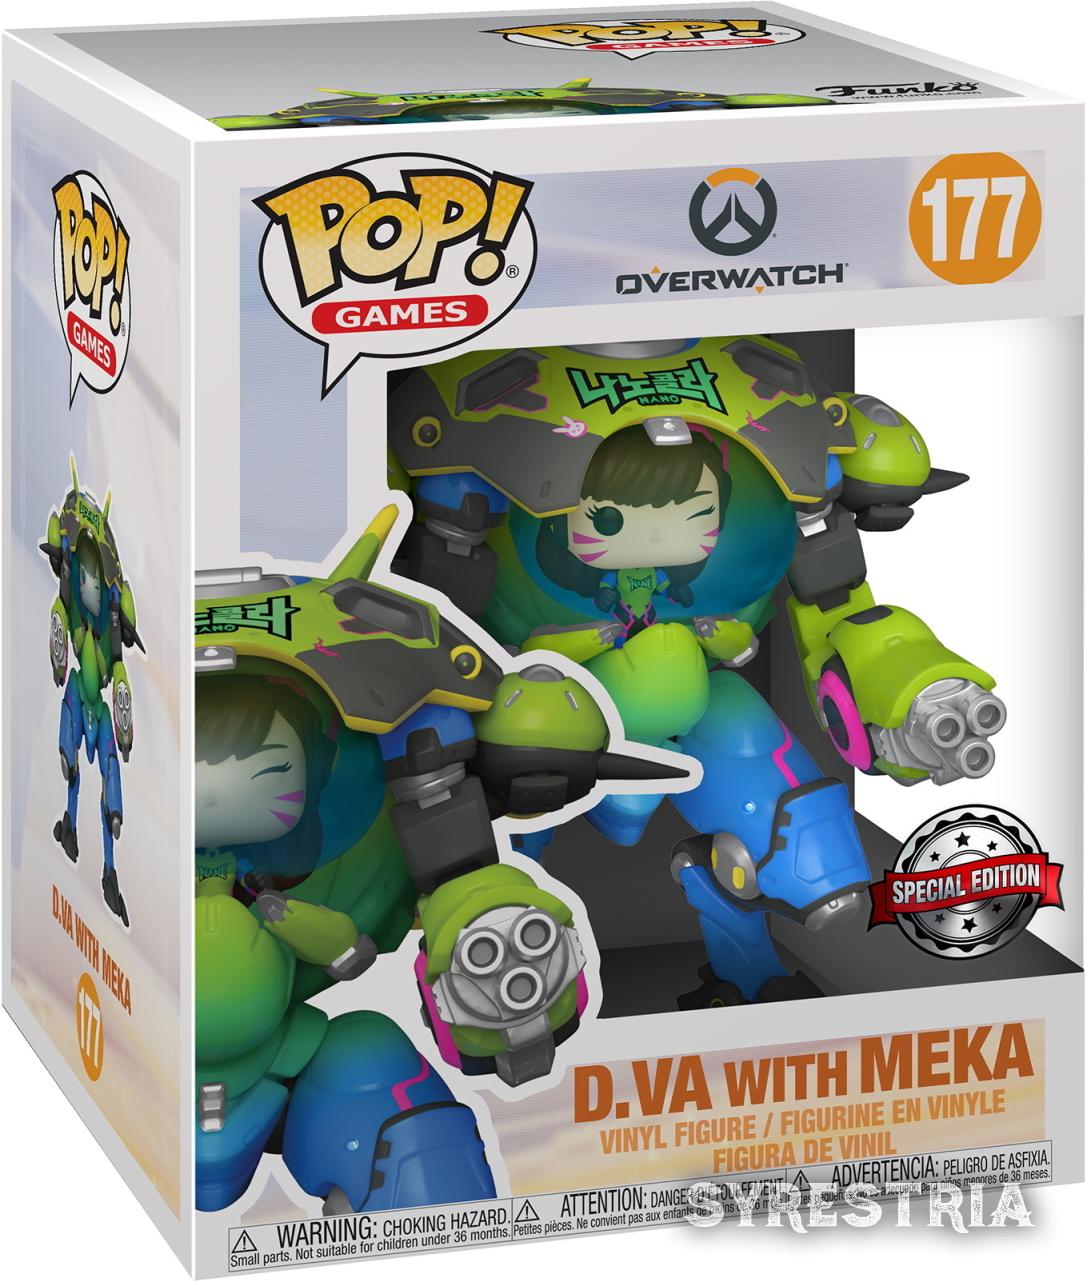 Overwatch - D.Va with Meka 177 Special Edition - Funko Pop! - Vinyl Figur